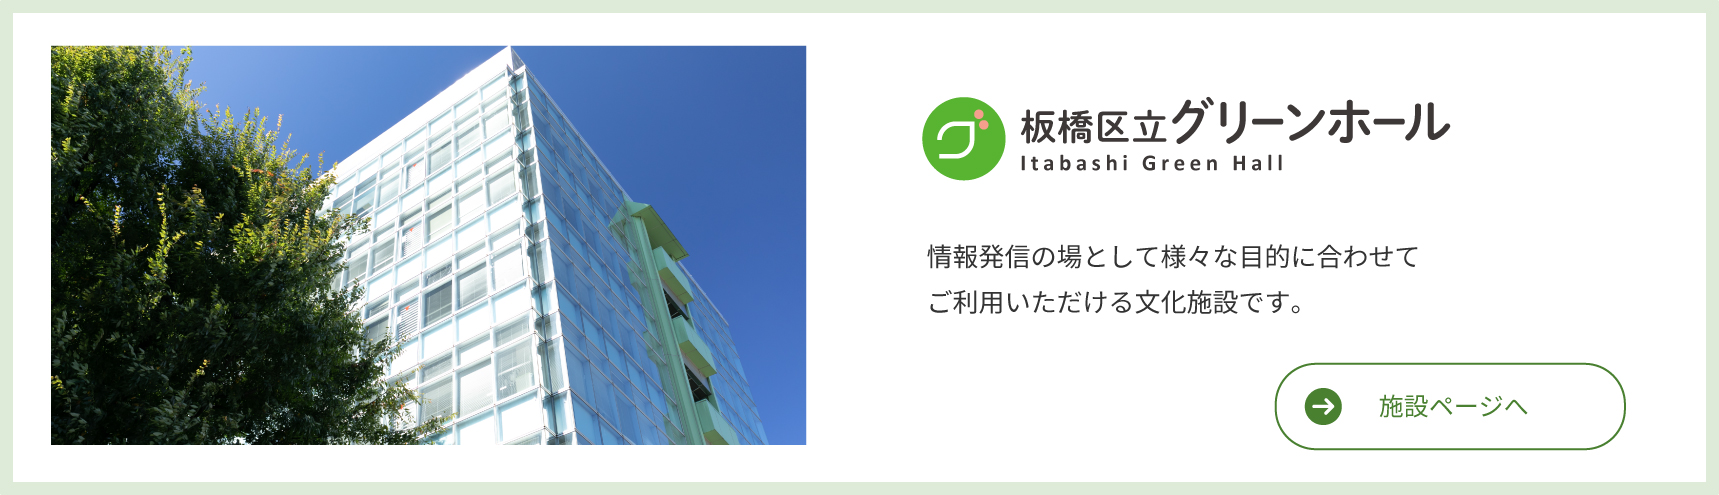 Itabashi Ward Green Hall Մշակութային հաստատություն, որը կարող է օգտագործվել տարբեր նպատակներով՝ որպես տեղեկատվության տարածման վայր: